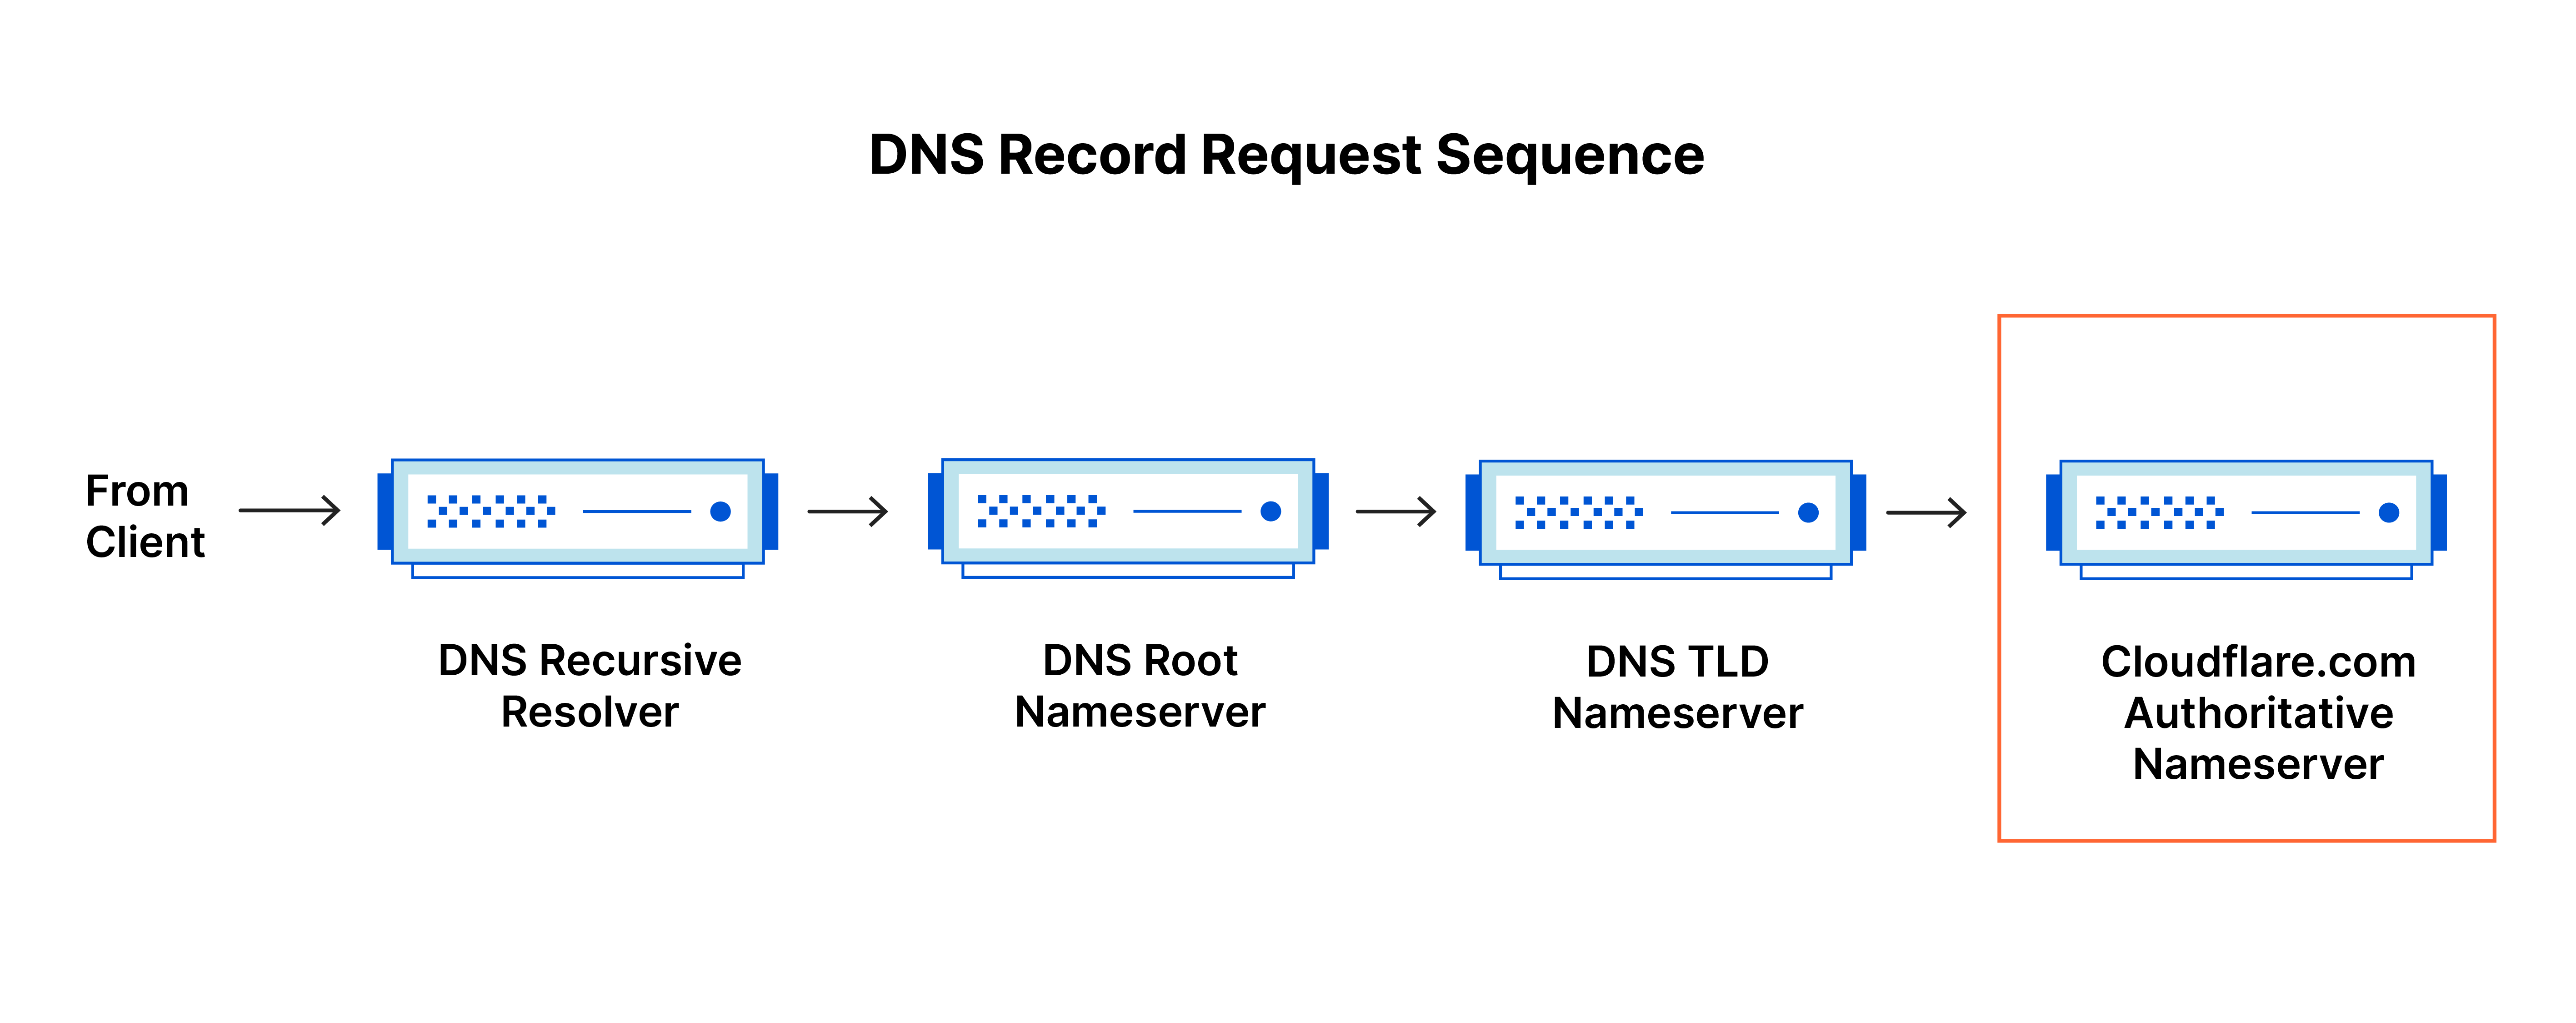 DNSレコードリクエストシーケンス - DNSクエリがcloudflare.comの権威のあるネームサーバーに到達